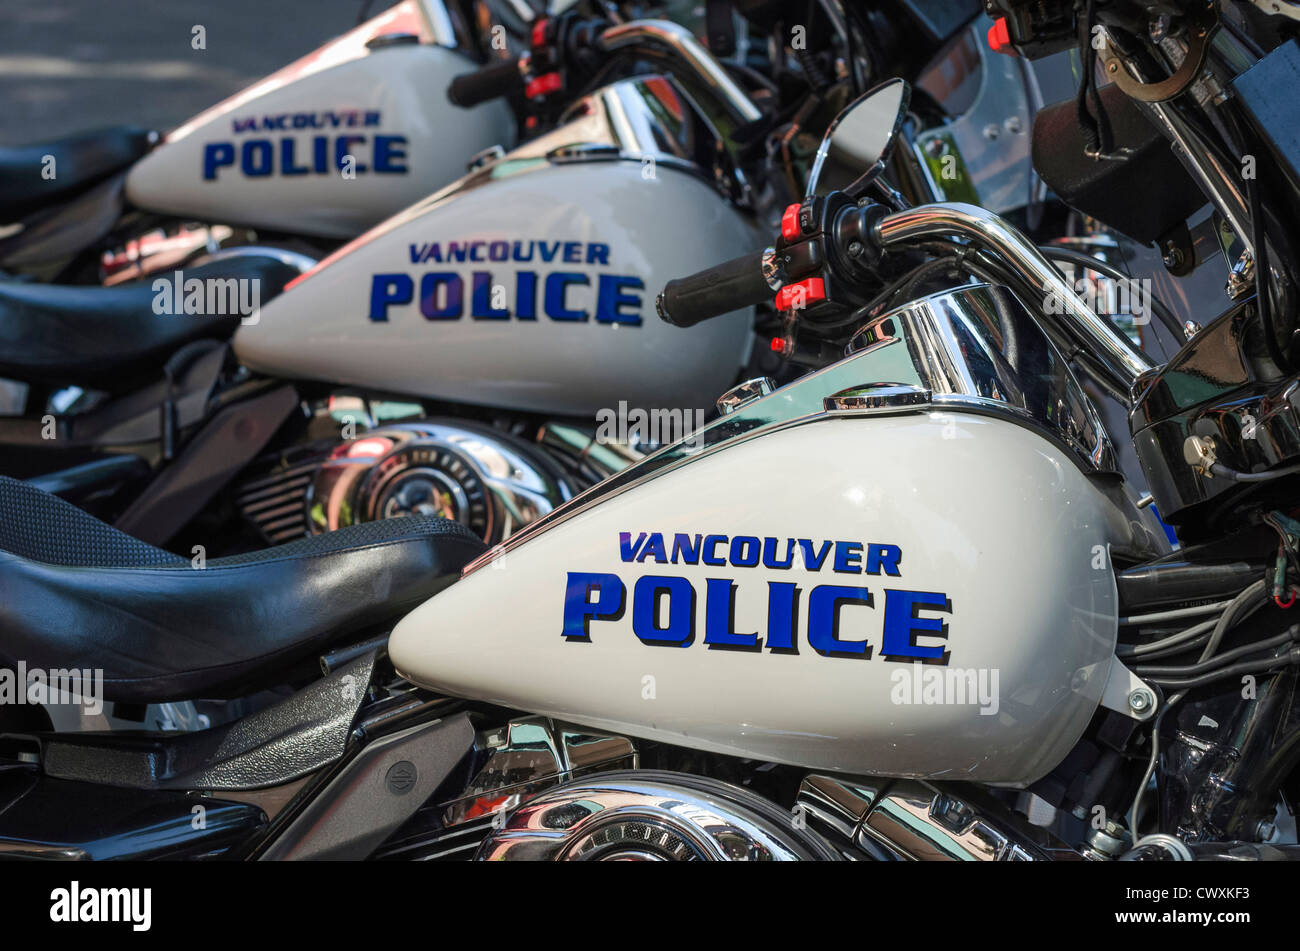 La policía de Vancouver - motos Harley Davidson. Foto de stock